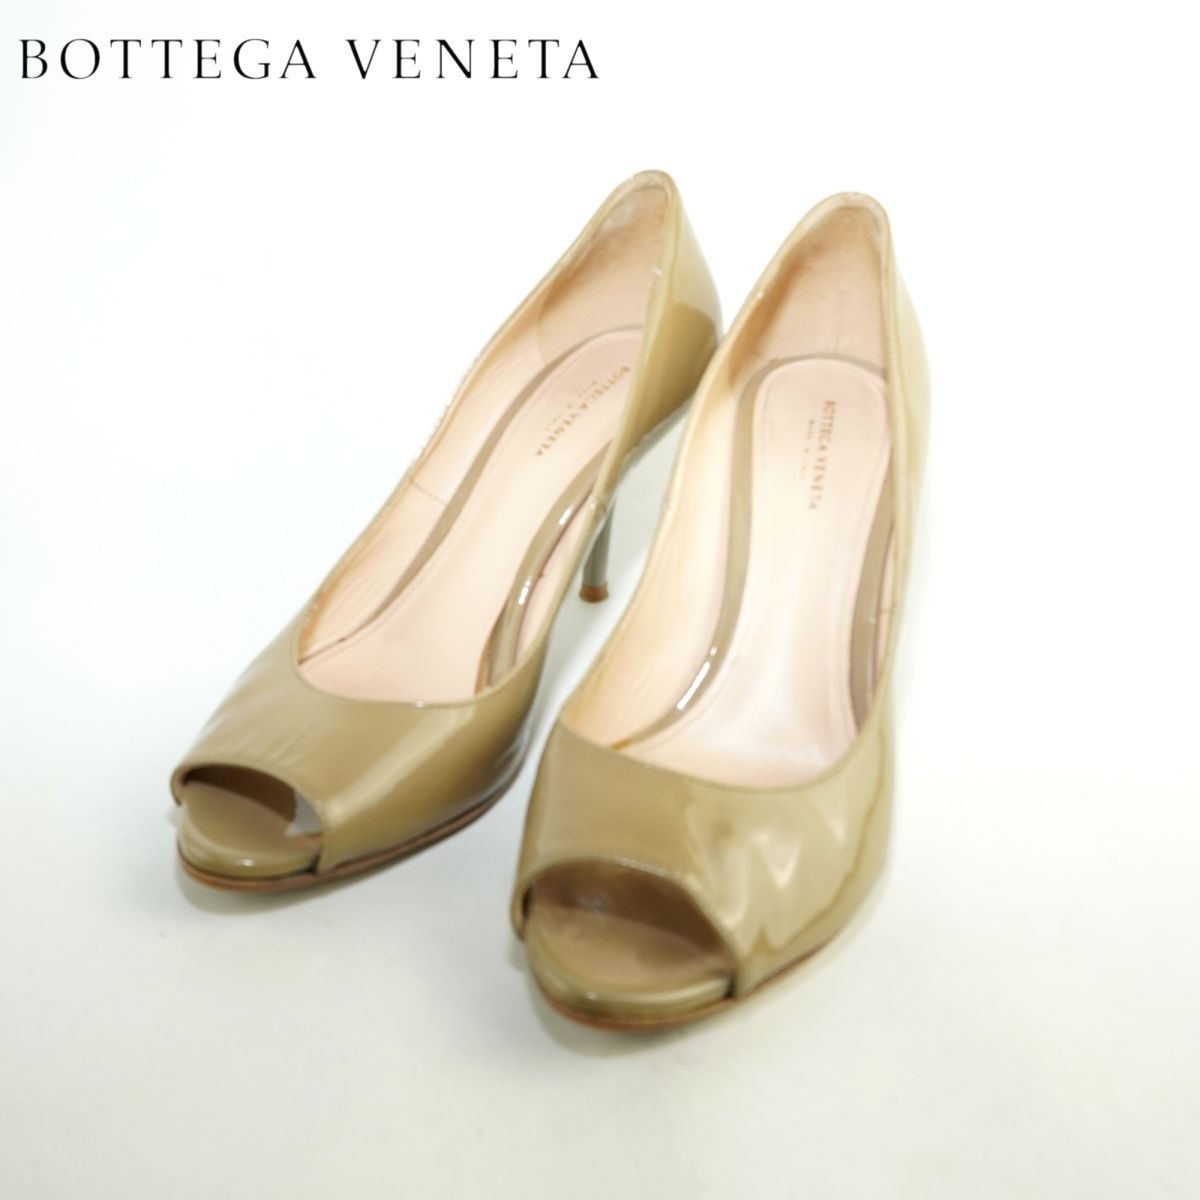 BOTTEGA VENETA ボッテガヴェネタ 37 24.0 パンプス イタリア製 ヒール オープントウ エナメル グレージュ/DC189の画像1